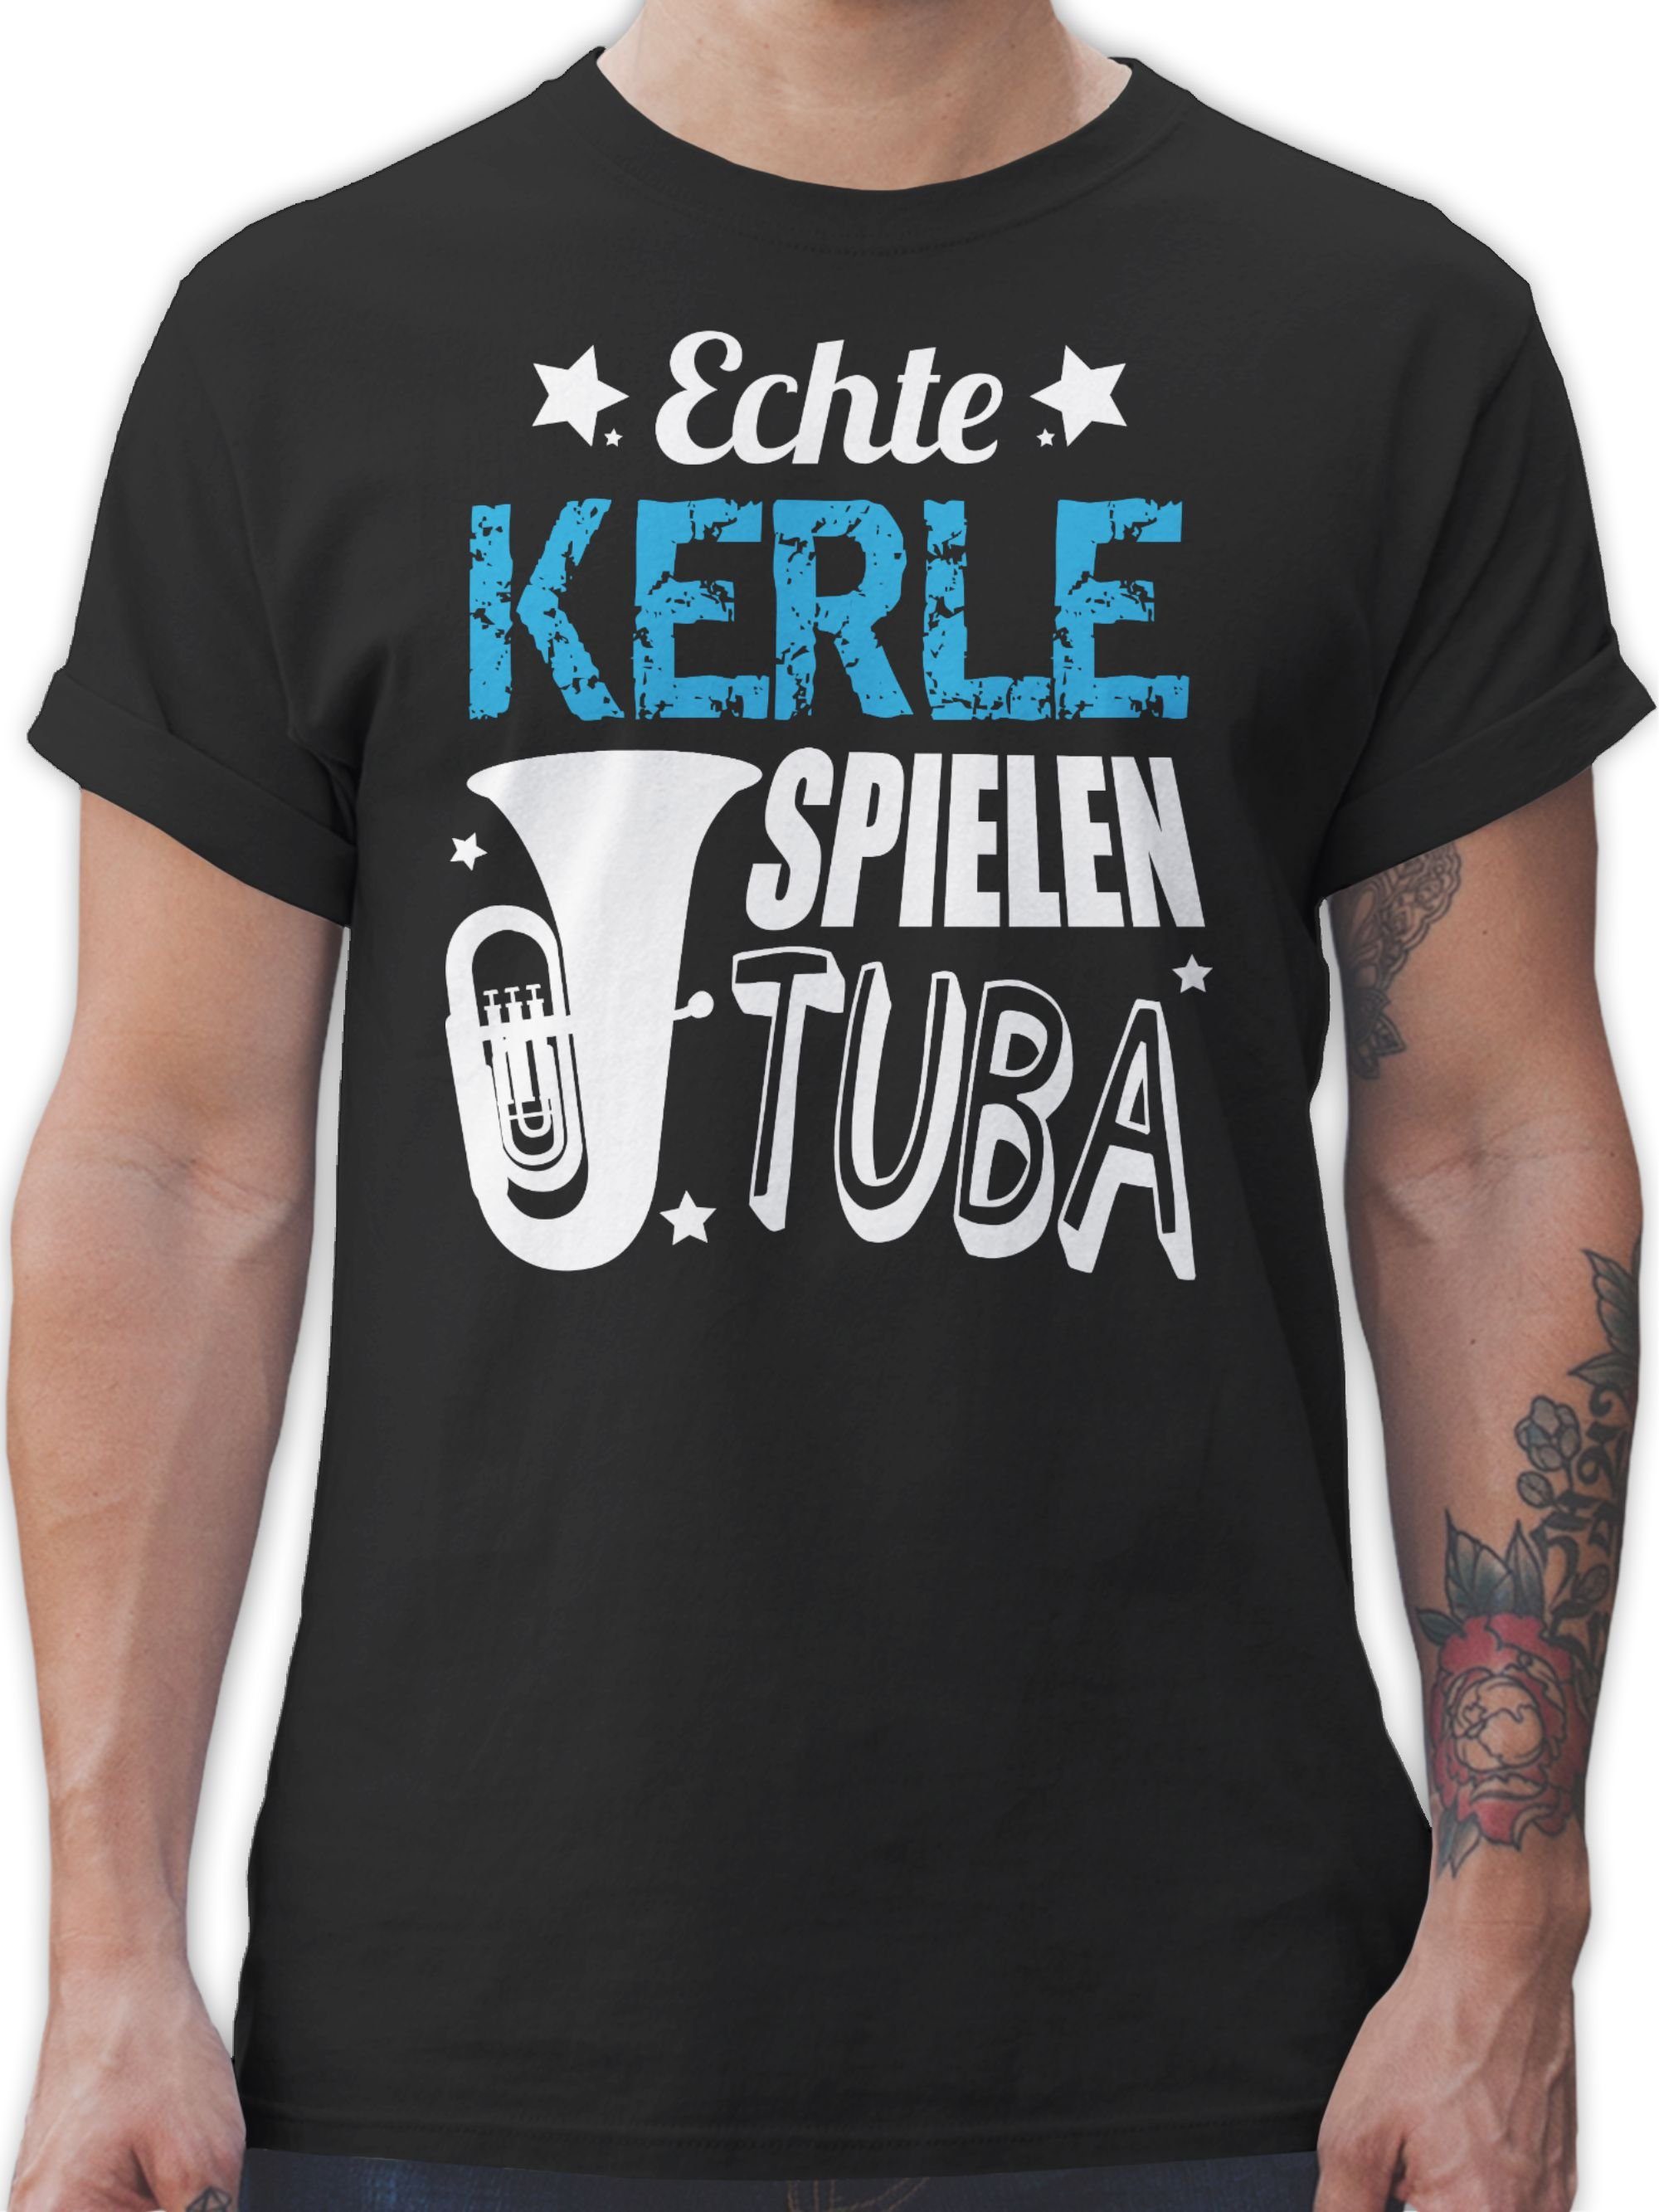 T-Shirt Echte Kerle Musik spielen Tuba 1 Zubehör Instrument Schwarz Shirtracer